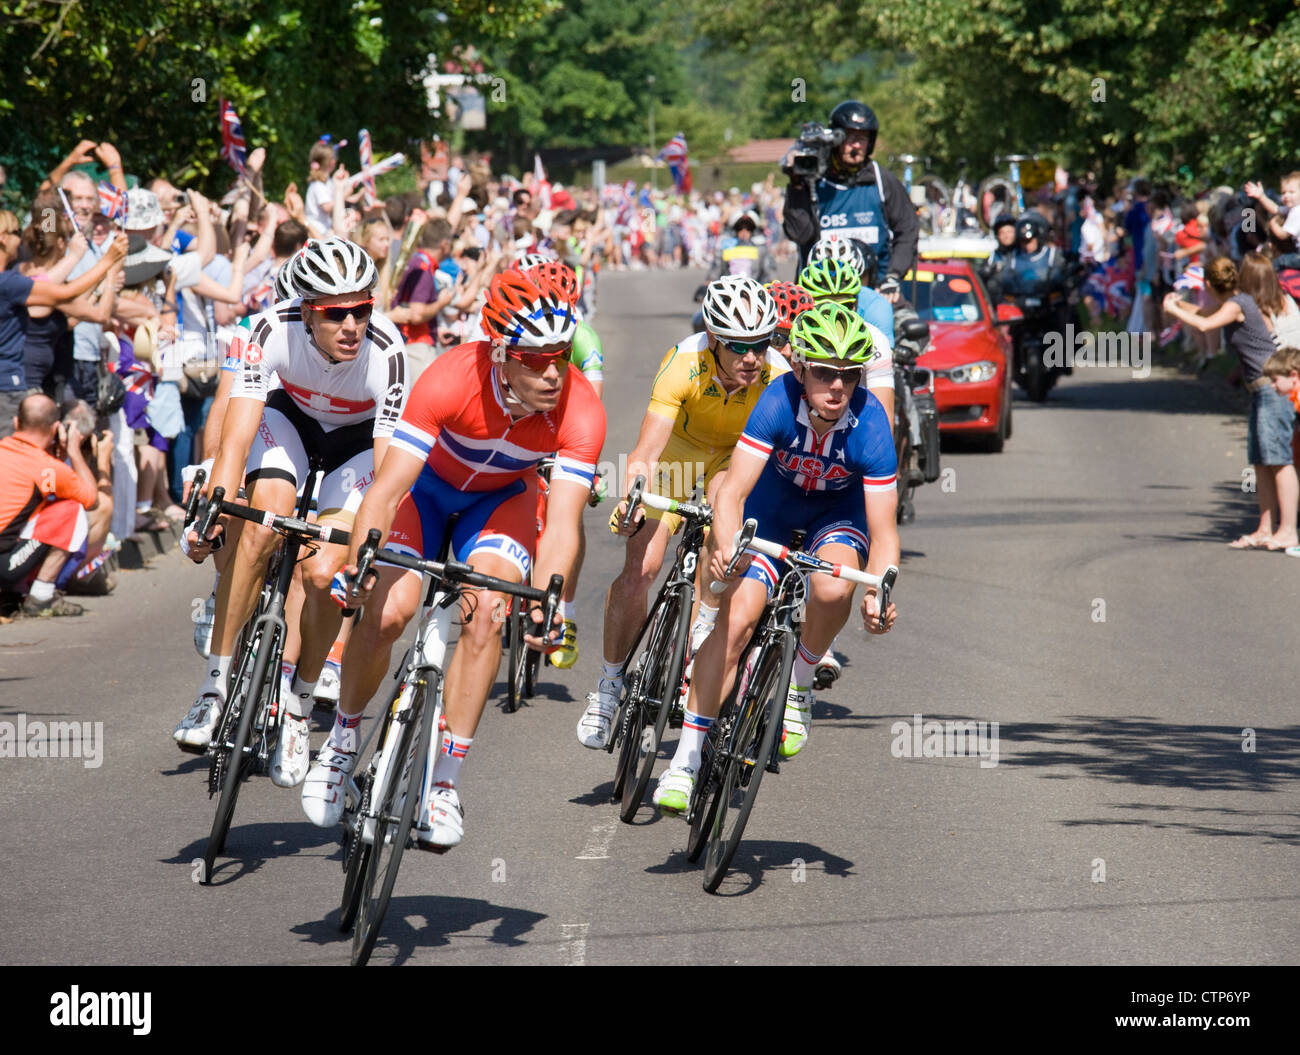 Jeux olympiques 2012, cyclisme, course sur route des hommes. Le groupe de tête à Ripley, Surrey. Banque D'Images